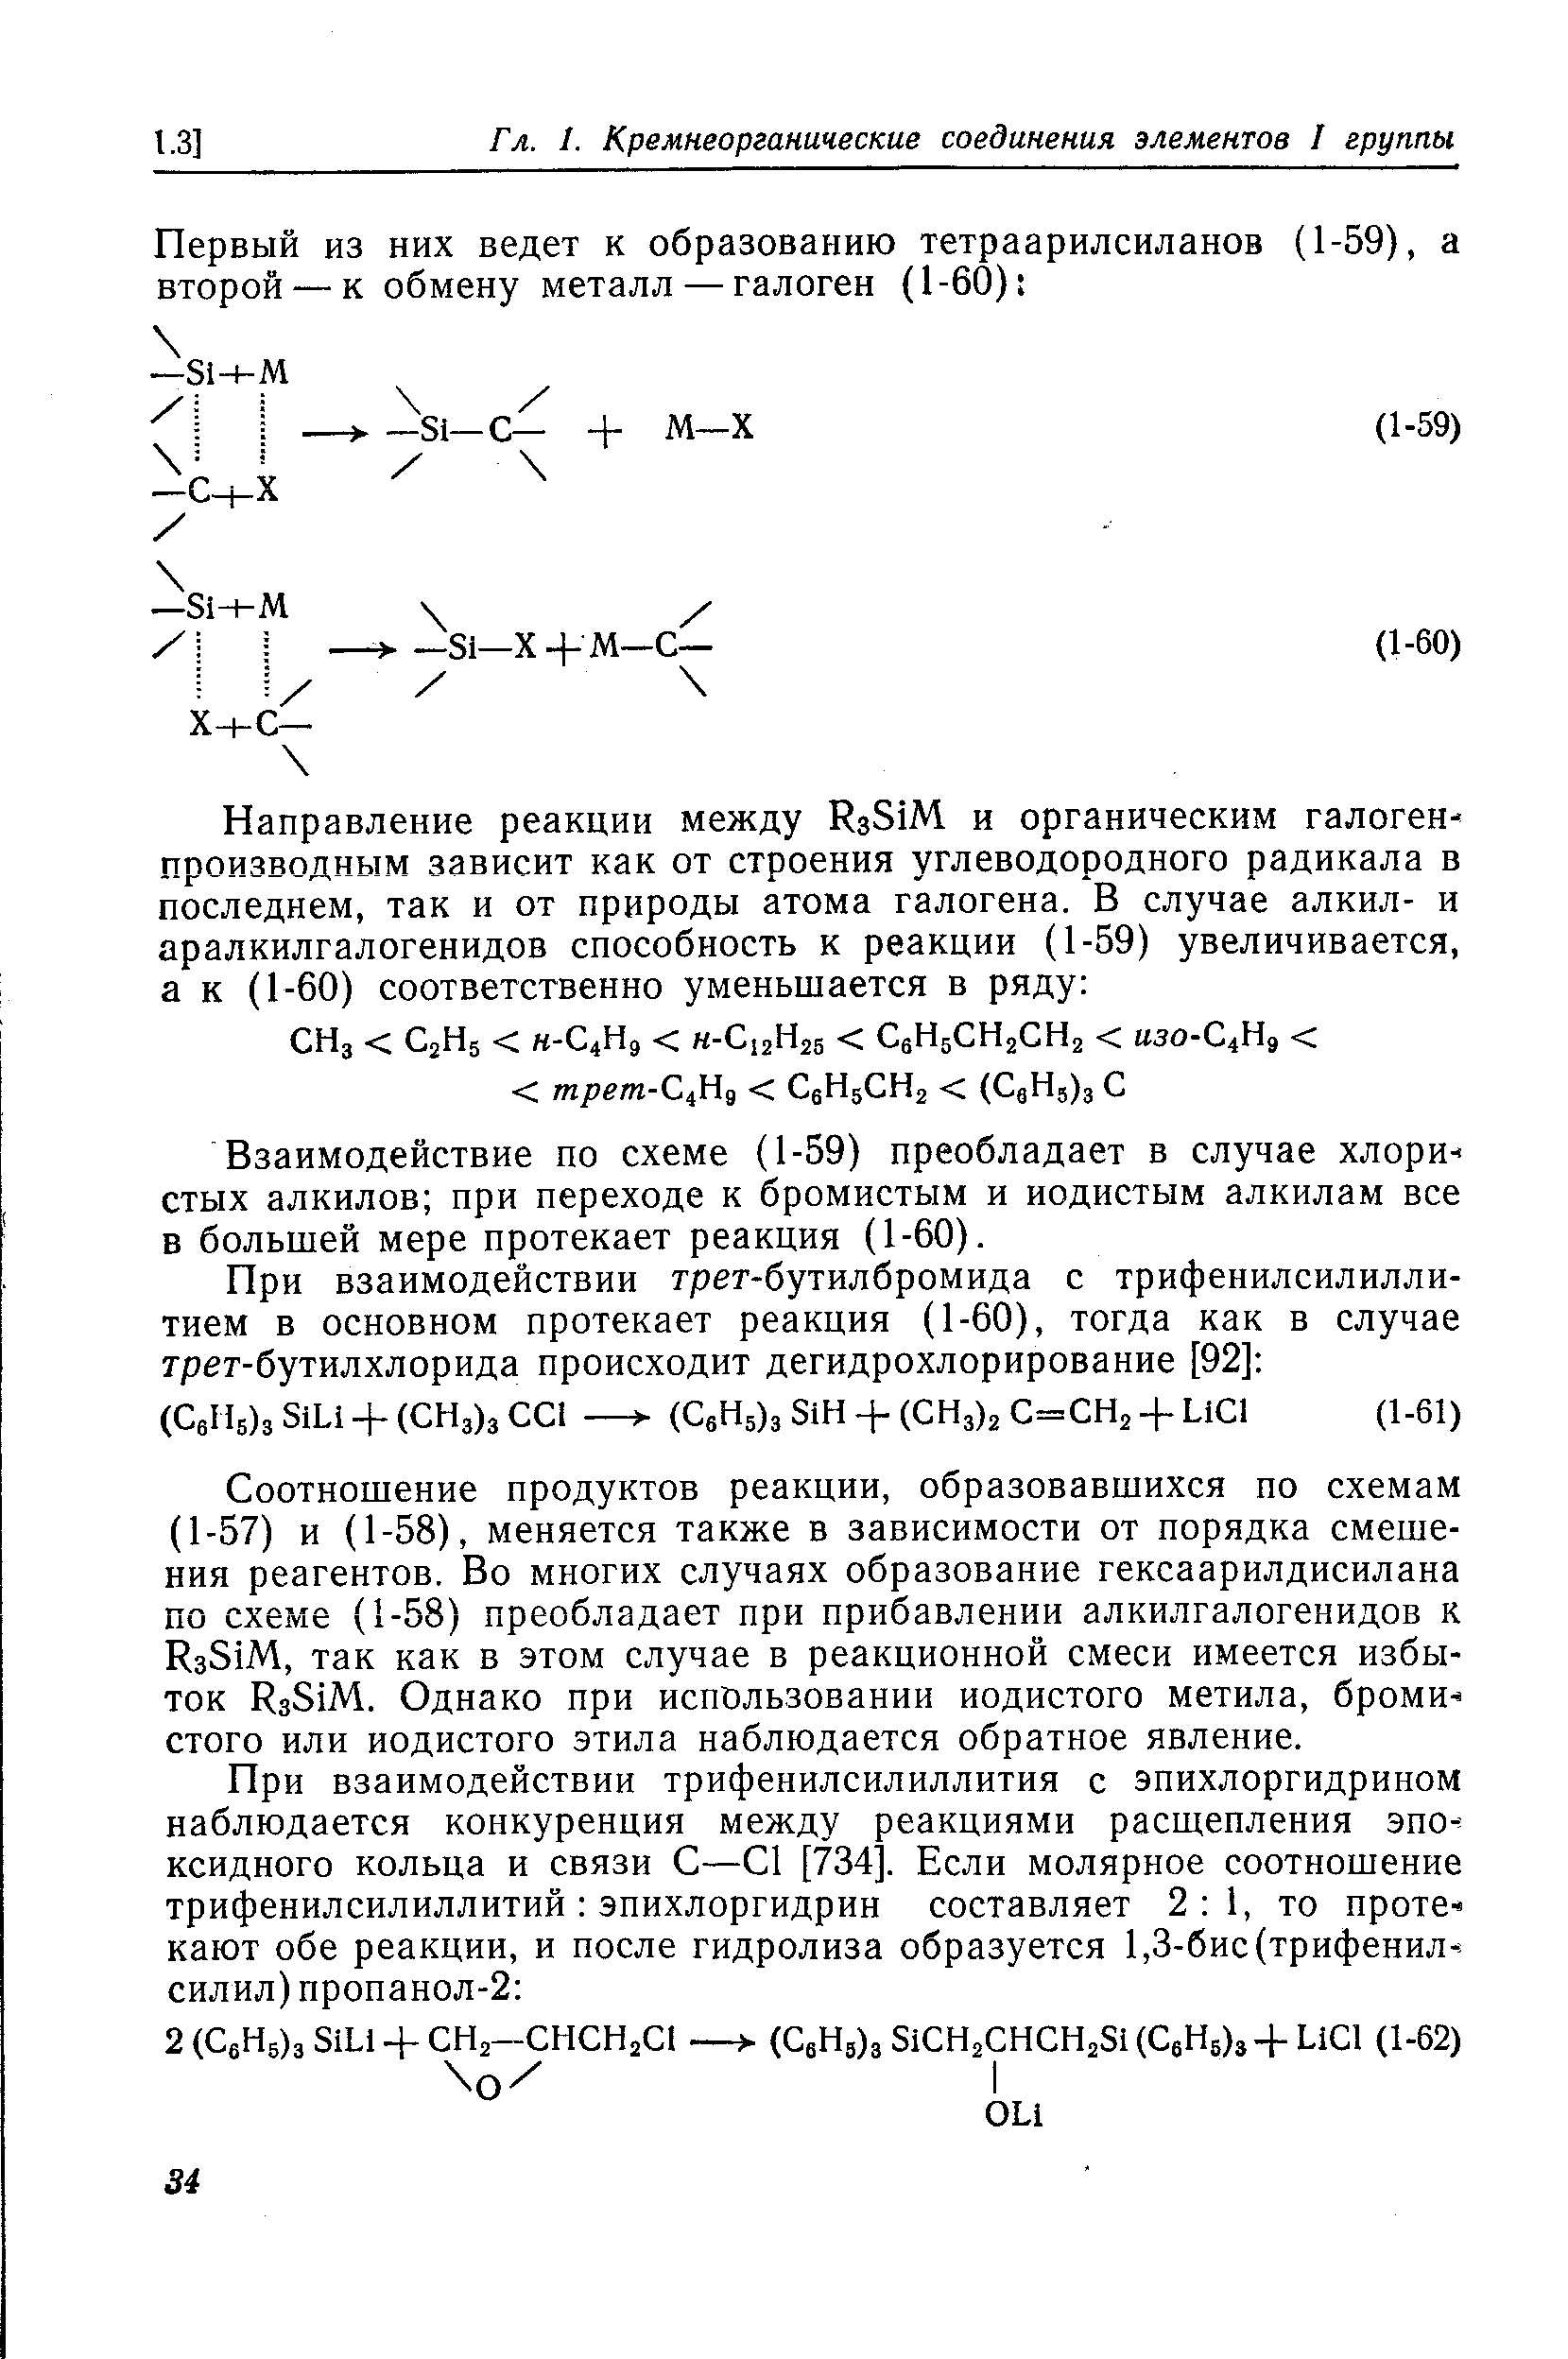 Взаимодействие по схеме (1-59) преобладает в случае хлористых алкилов при переходе к бромистым и иодистым алкилам все в большей мере протекает реакция (1-60).